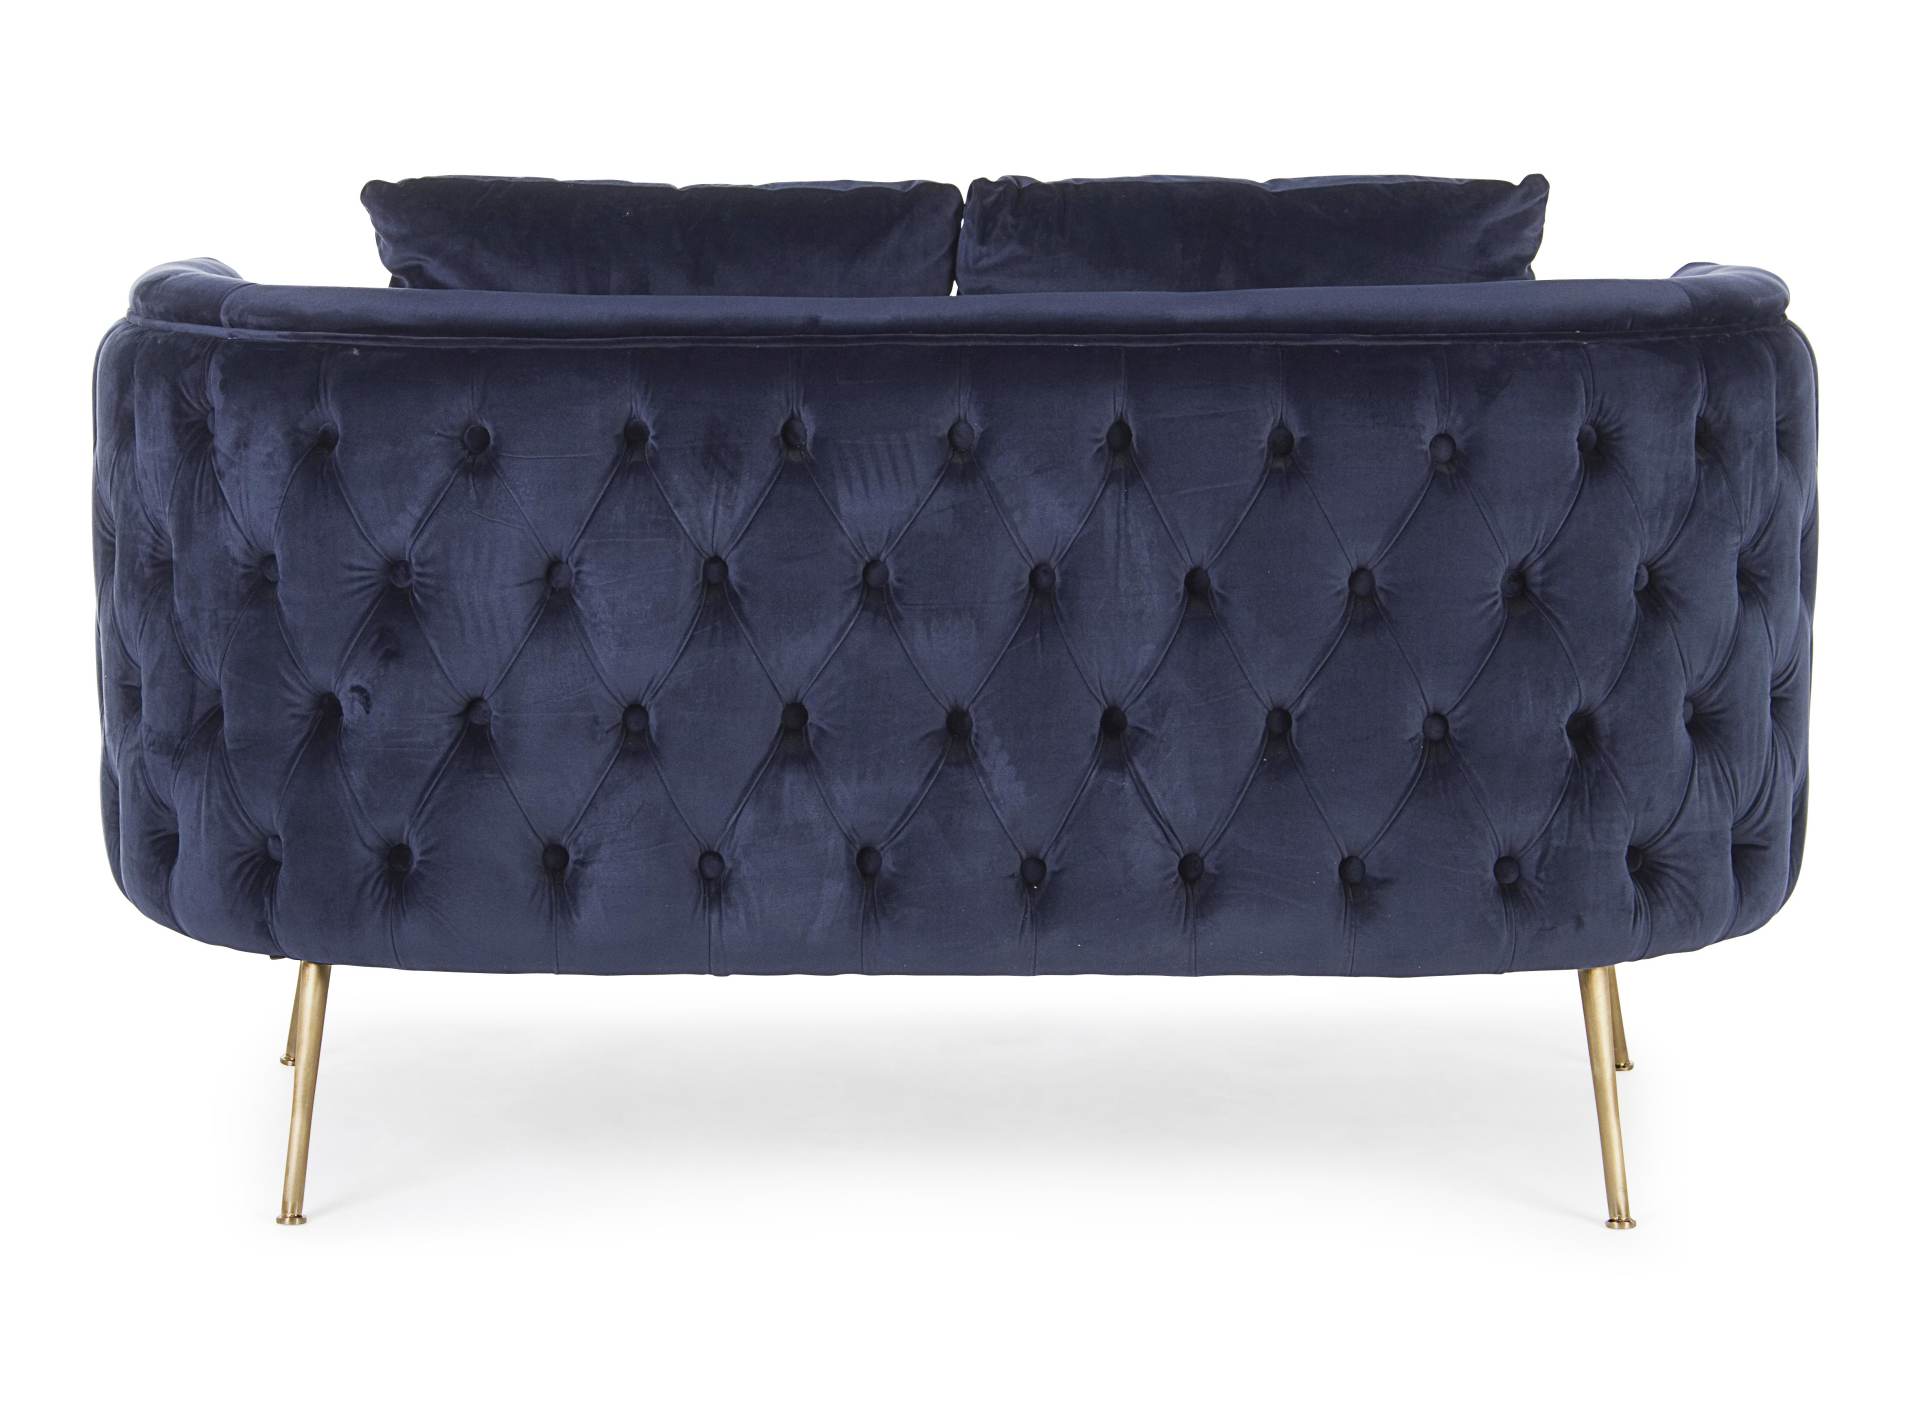 Das Sofa Tenbury überzeugt mit seinem modernen Design. Gefertigt wurde es aus Stoff in Samt-Optik, welcher einen blauen Farbton besitzt. Das Gestell ist aus Metall und hat eine goldene Farbe. Das Sofa ist in der Ausführung als 2-Sitzer. Die Breite beträgt